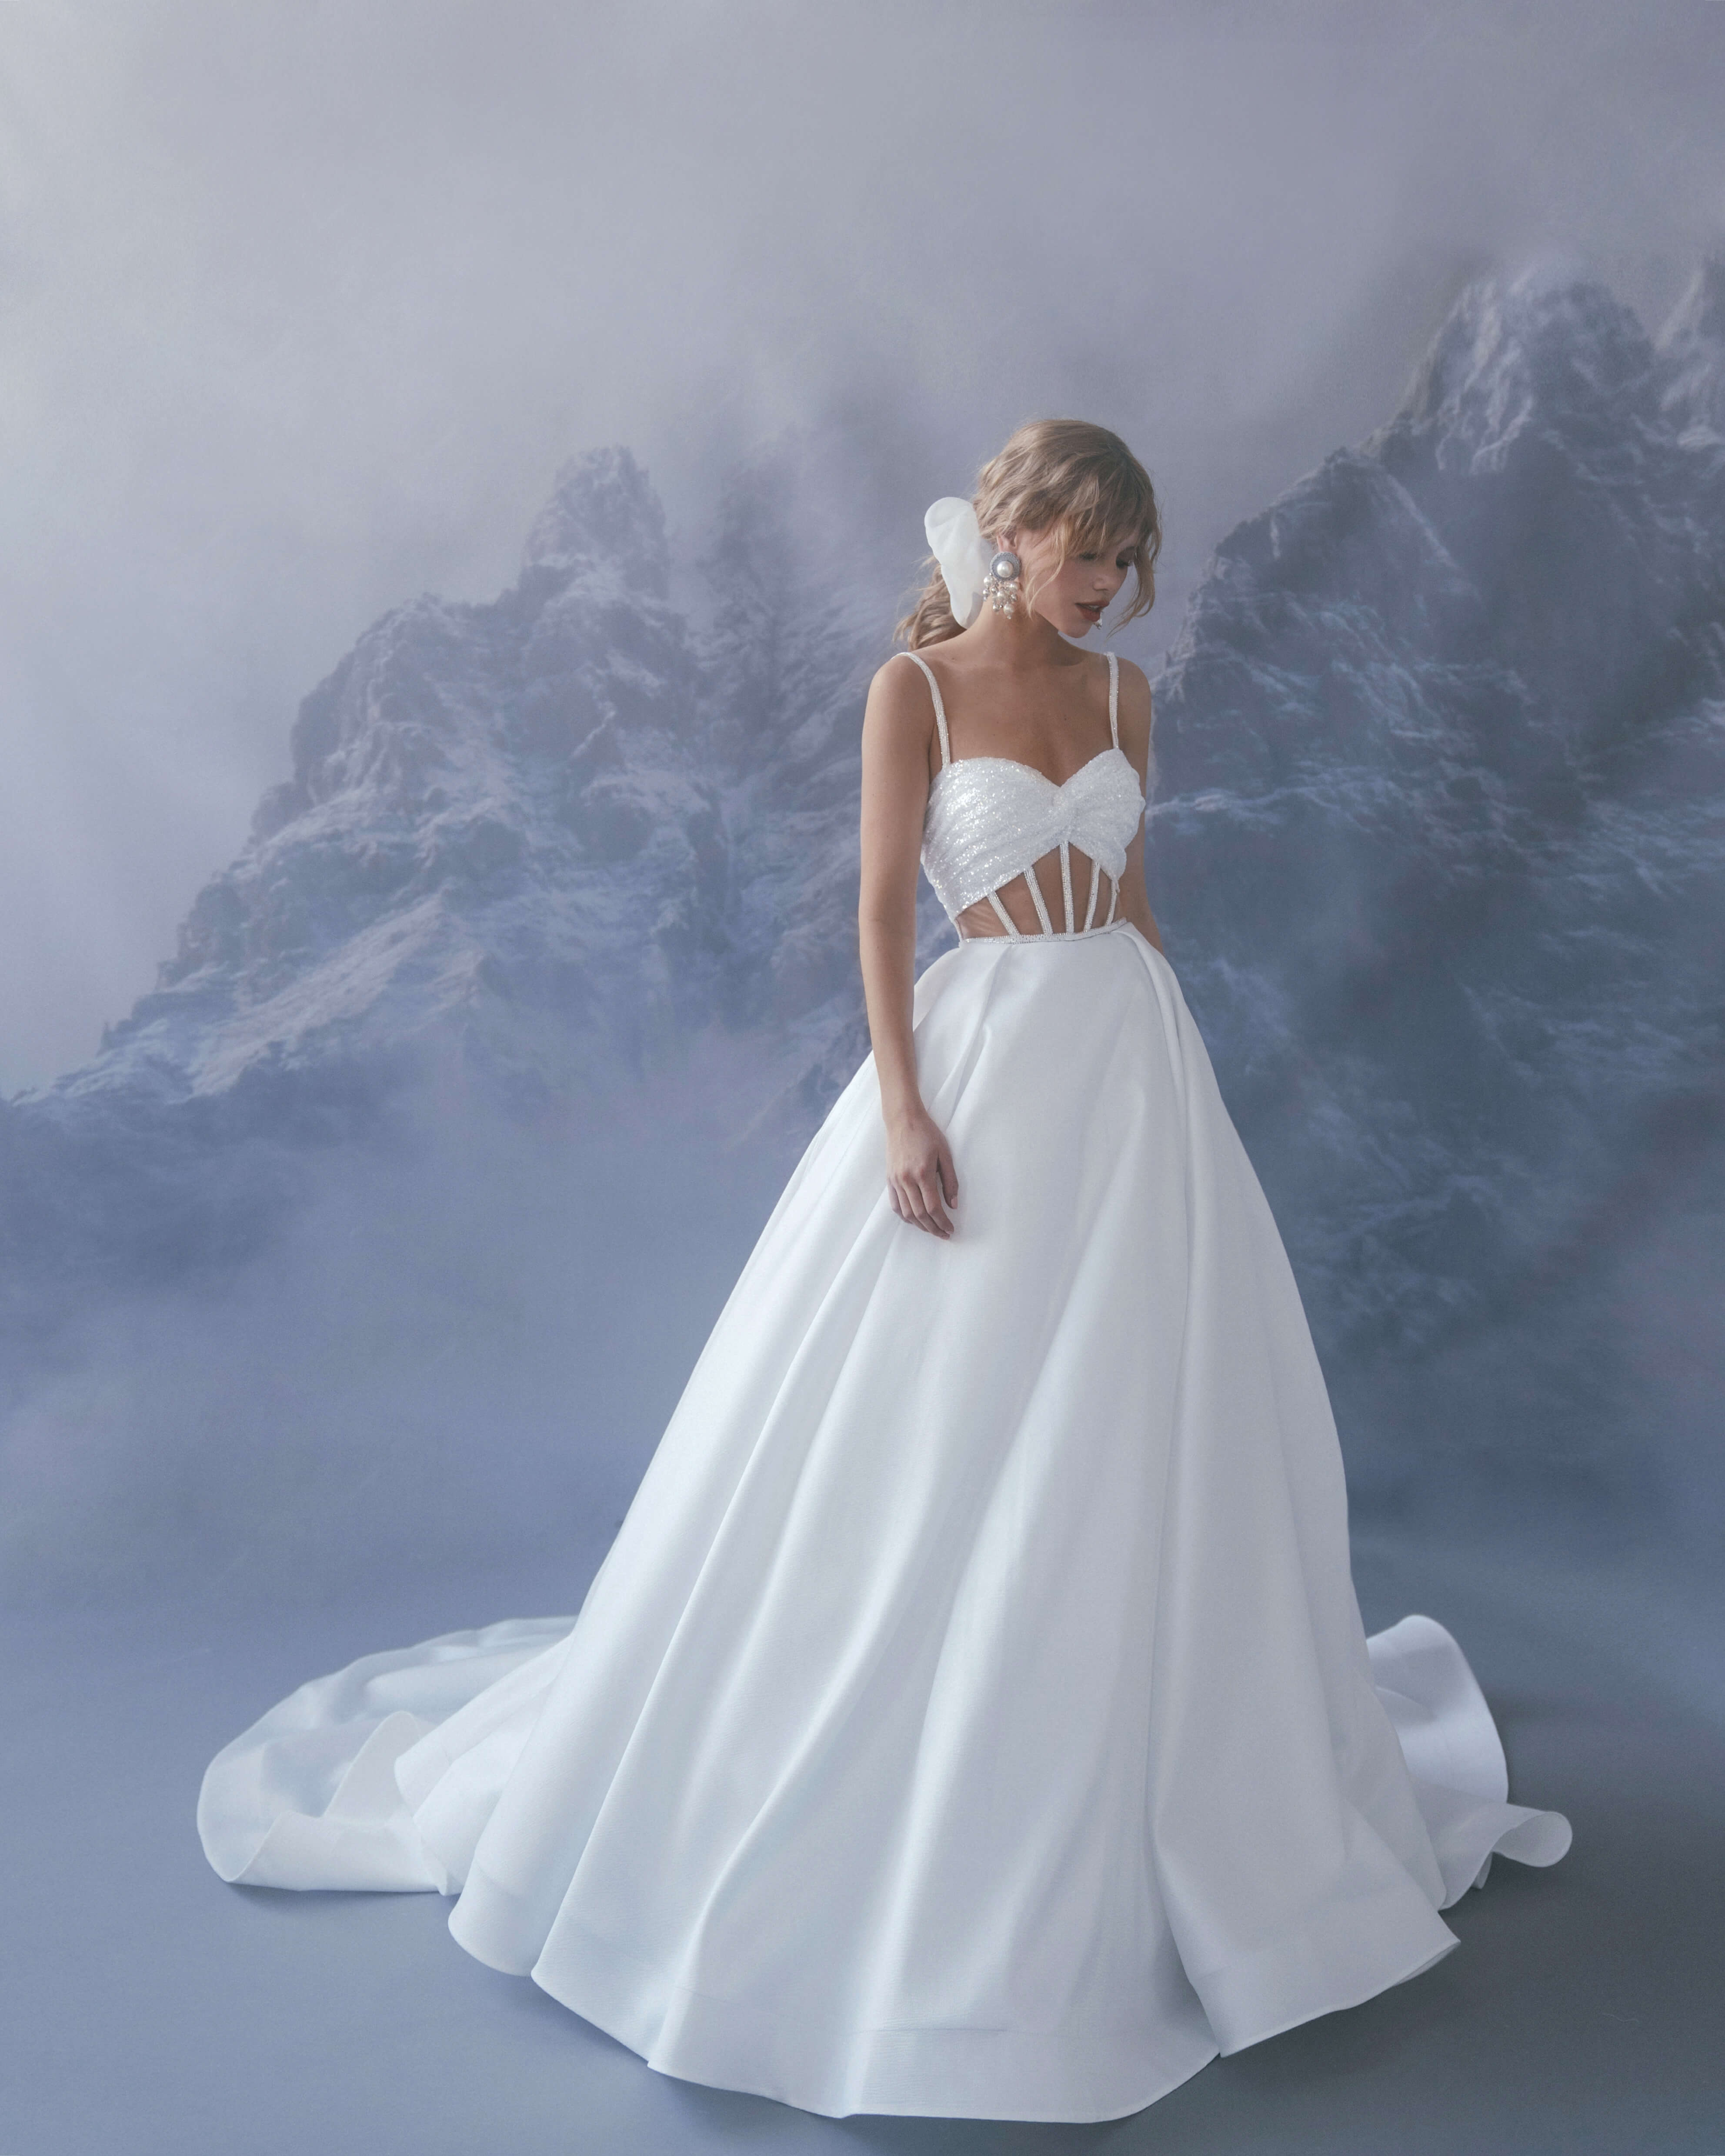 Купить свадебное платье «Дороте» Бламмо Биамо из коллекции Сказка 2022 года в салоне «Мэри Трюфель»